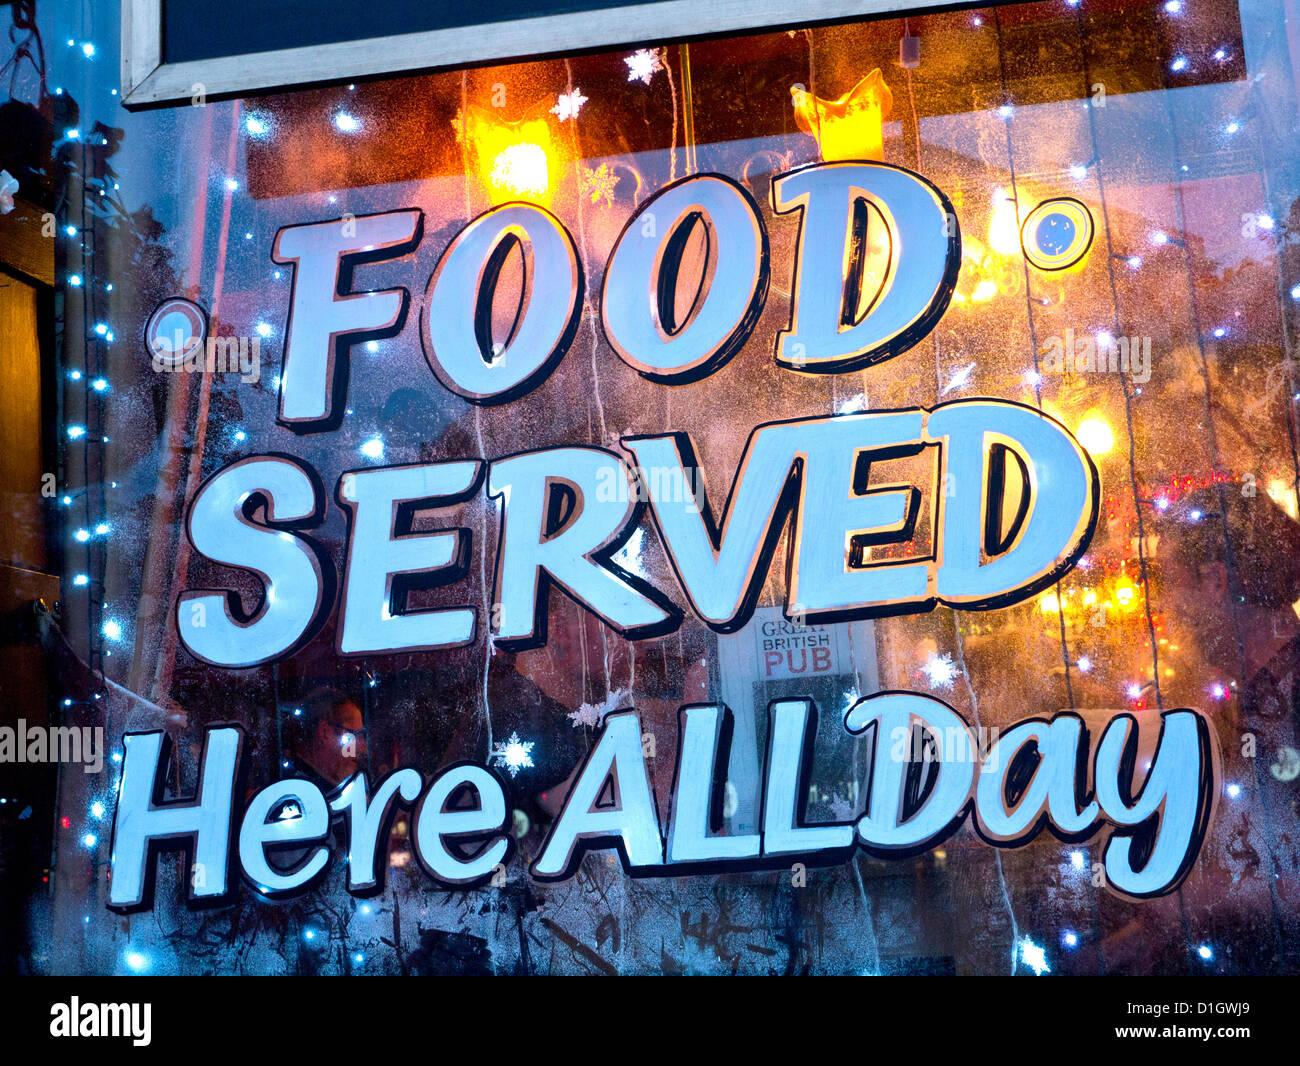 Winter-Schild an typisch britischen Pub Fenster Werbung Essen ganztägig Stockfoto